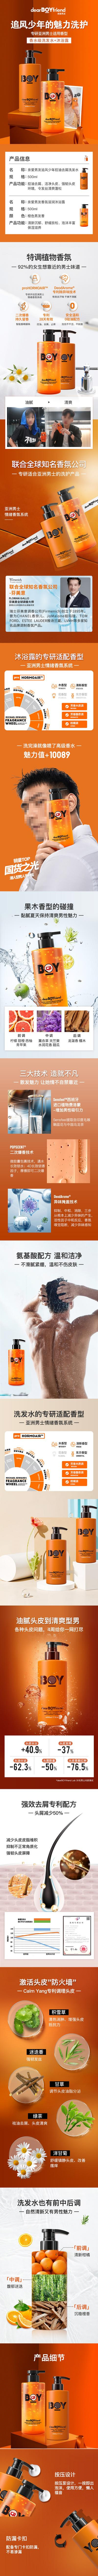 【南门网】广告 海报 电商 洗护 长图 人物 高端 创意 热销 天猫